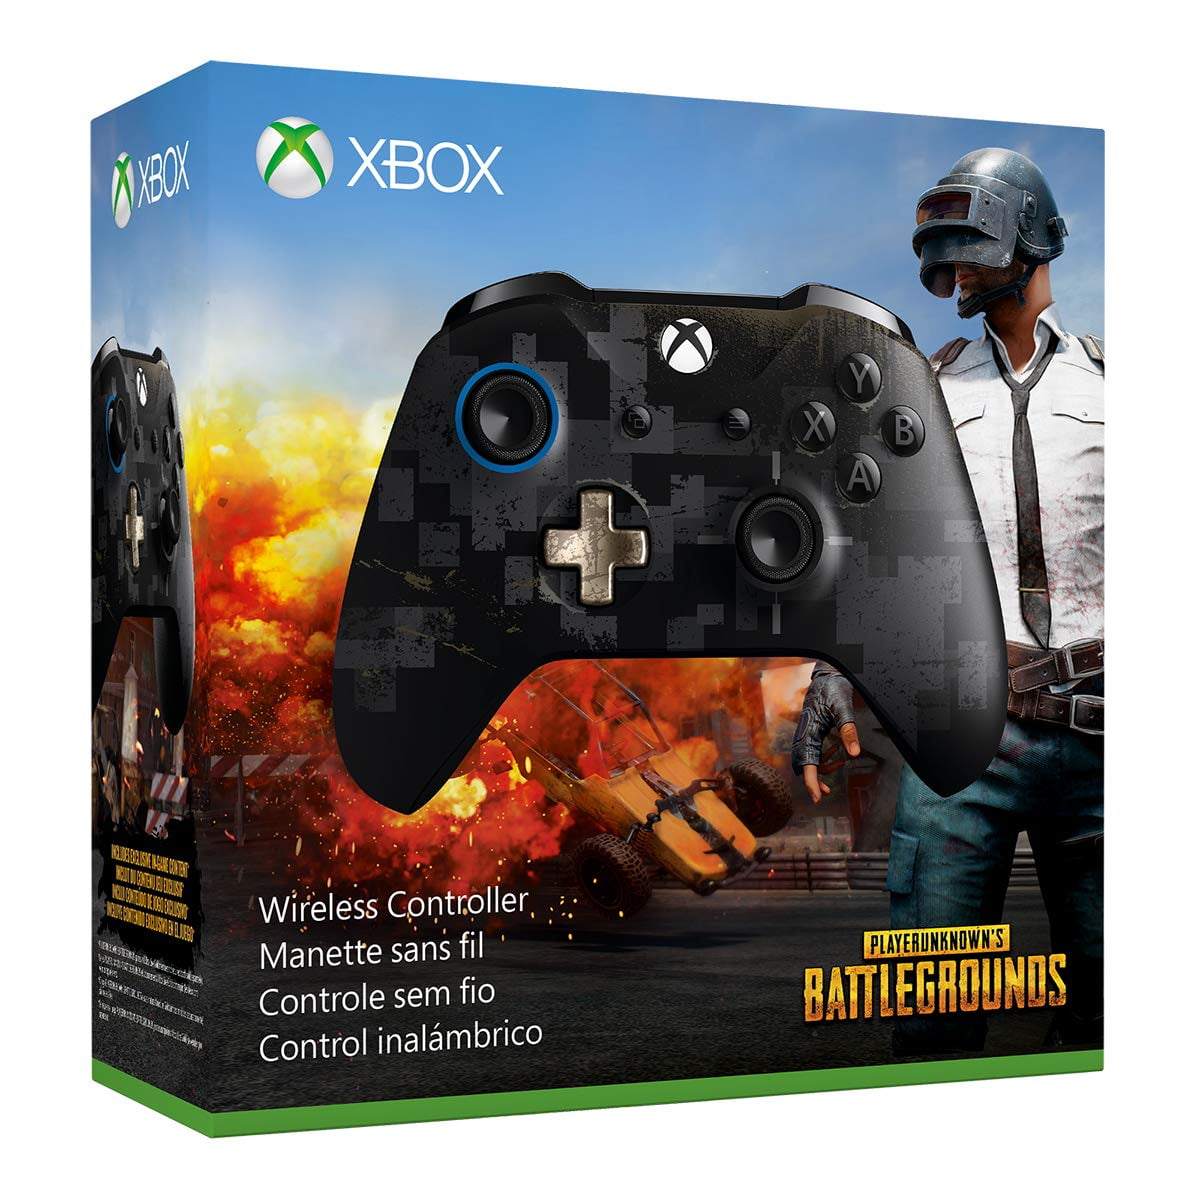 Xbox One Gears of War 4 JD Fenix Wireless Controller Prices Xbox